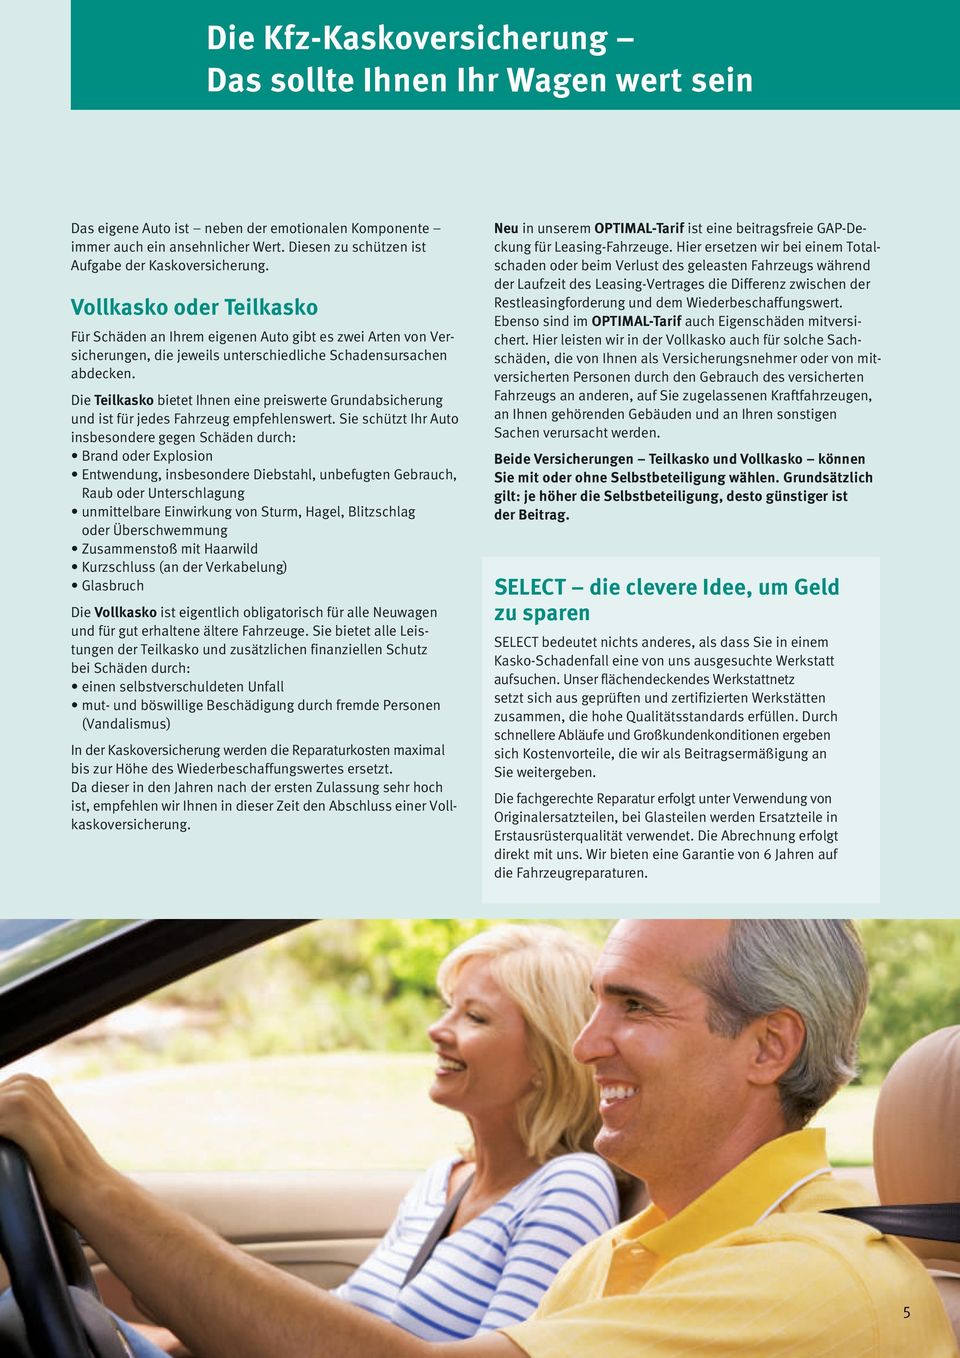 Vollkaskooder Teilkasko Für Schäden an Ihrem eigenen Auto gibt es zwei Arten von Versicherungen, die jeweils unterschiedliche Schadensursachen abdecken.